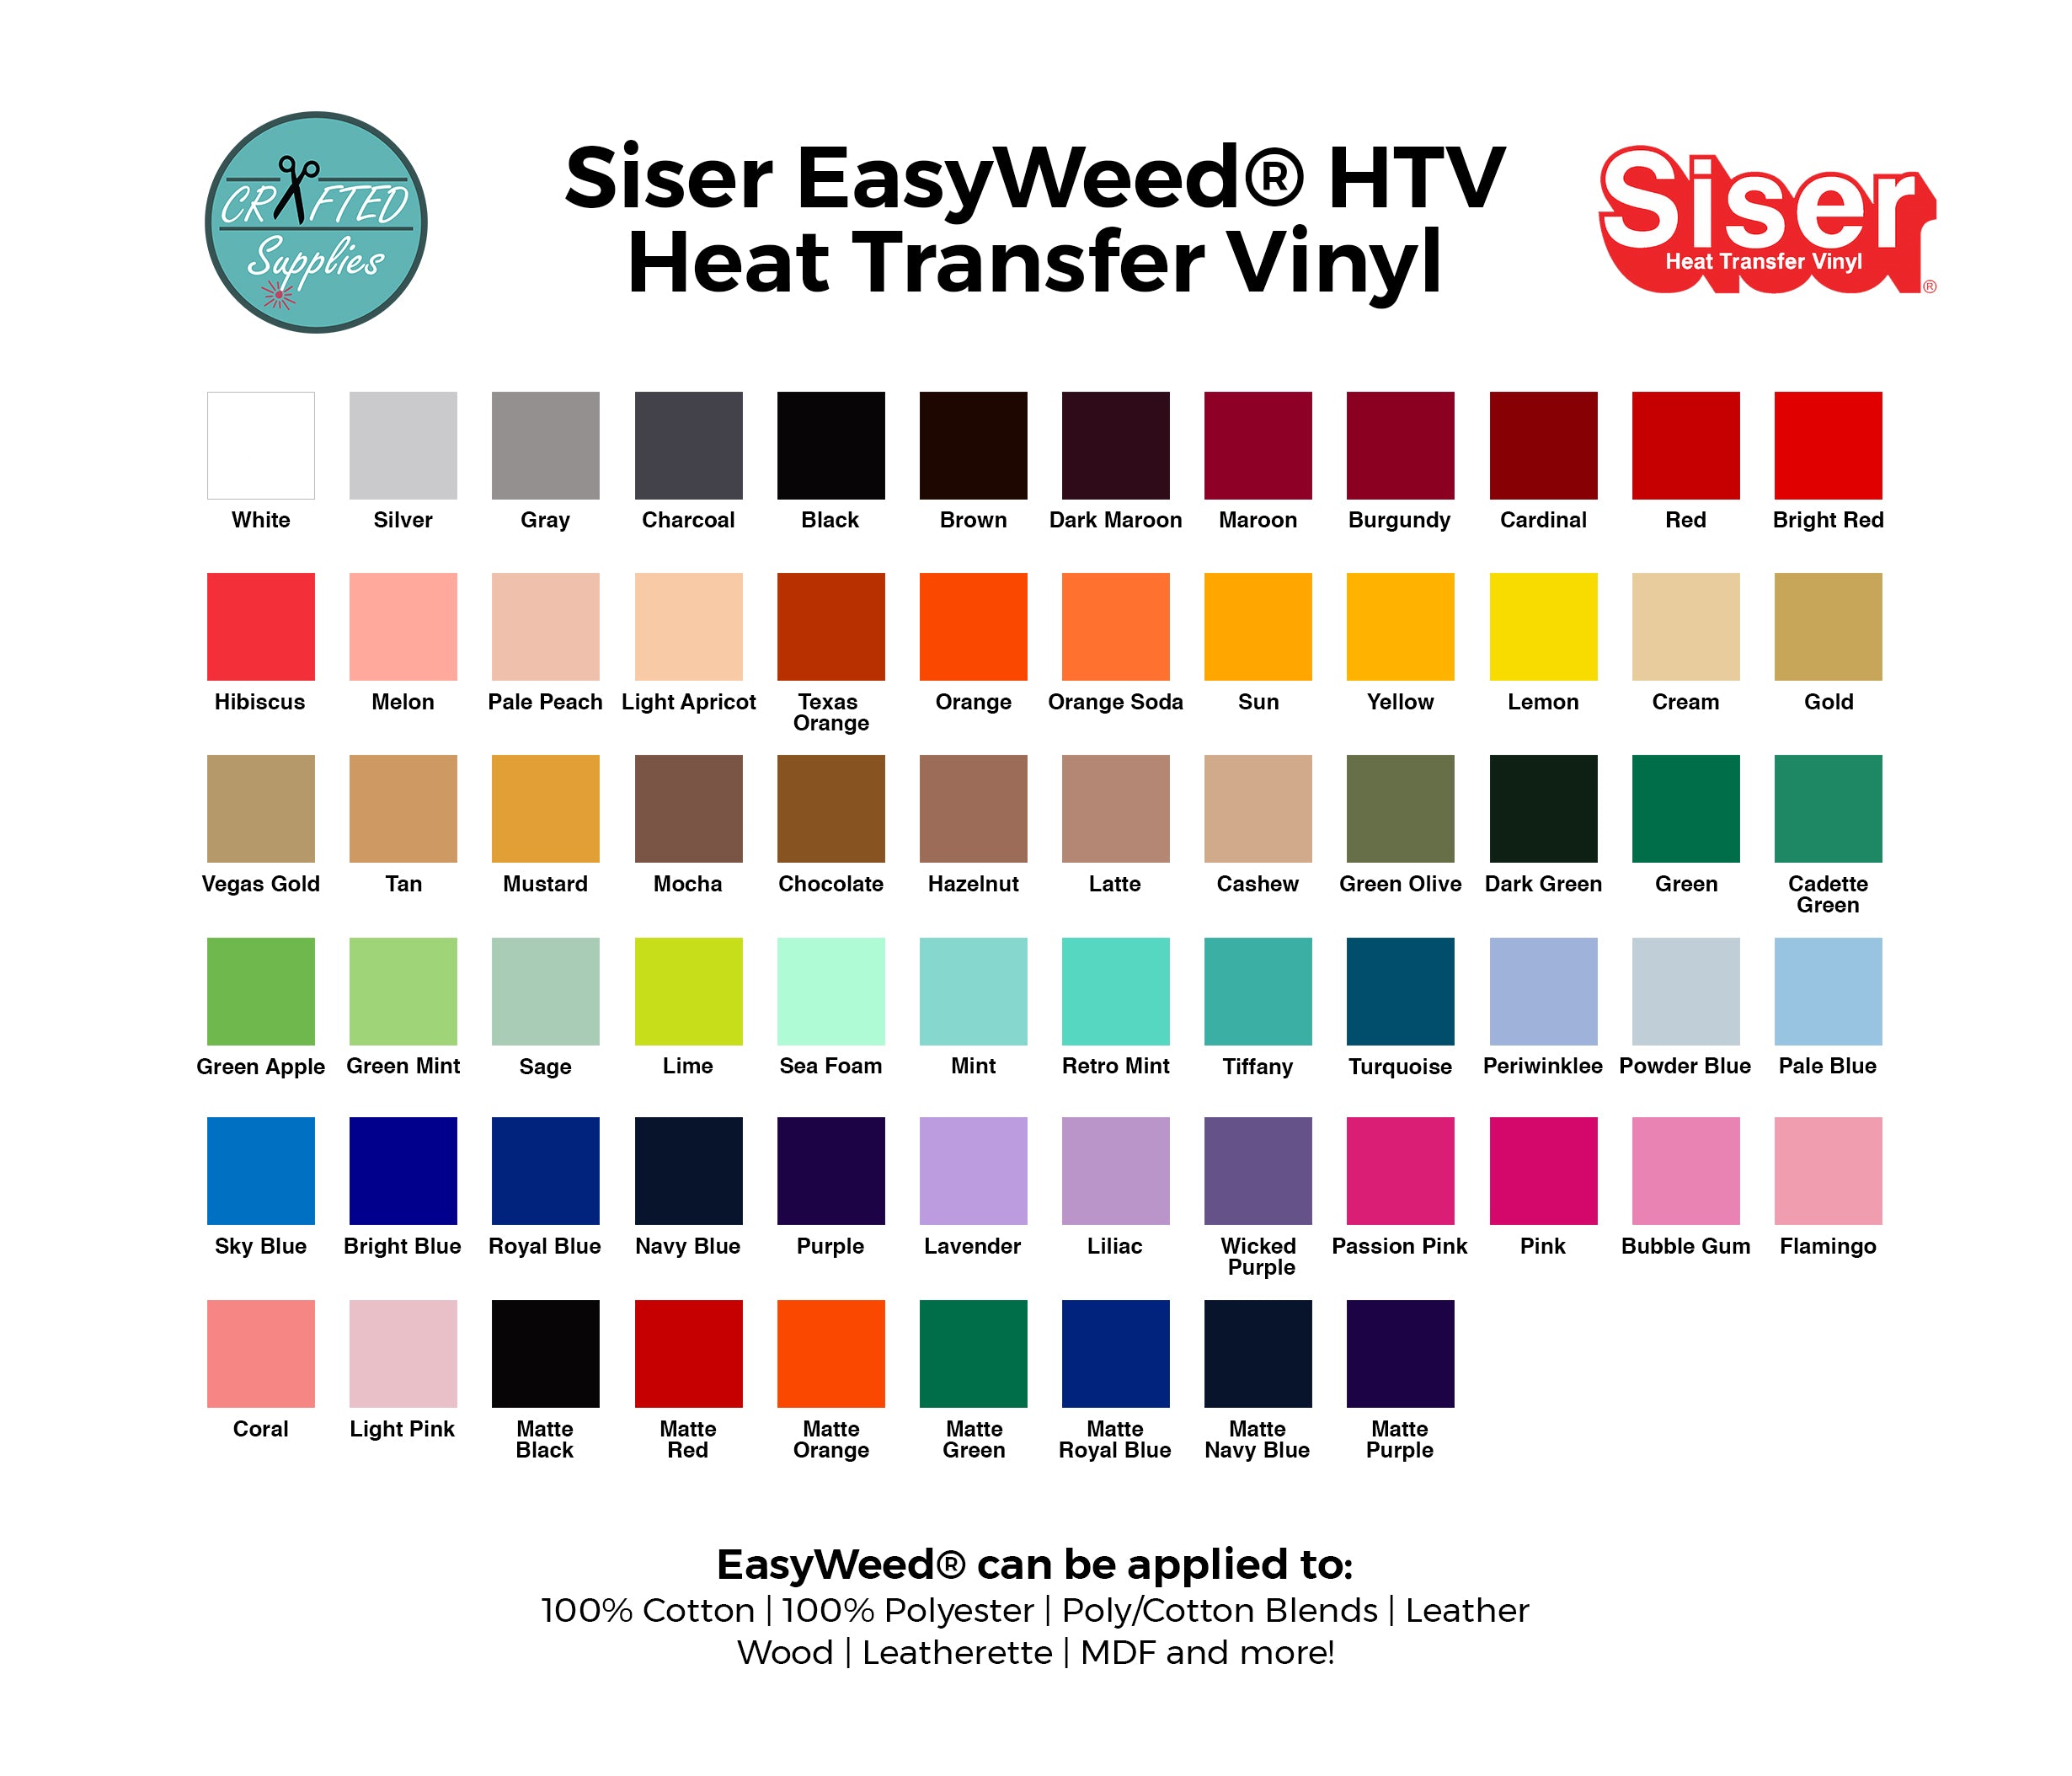 Wicked Purple Siser EasyWeed HTV 15 / Heat Transfer Vinyl / Siser EasyWeed